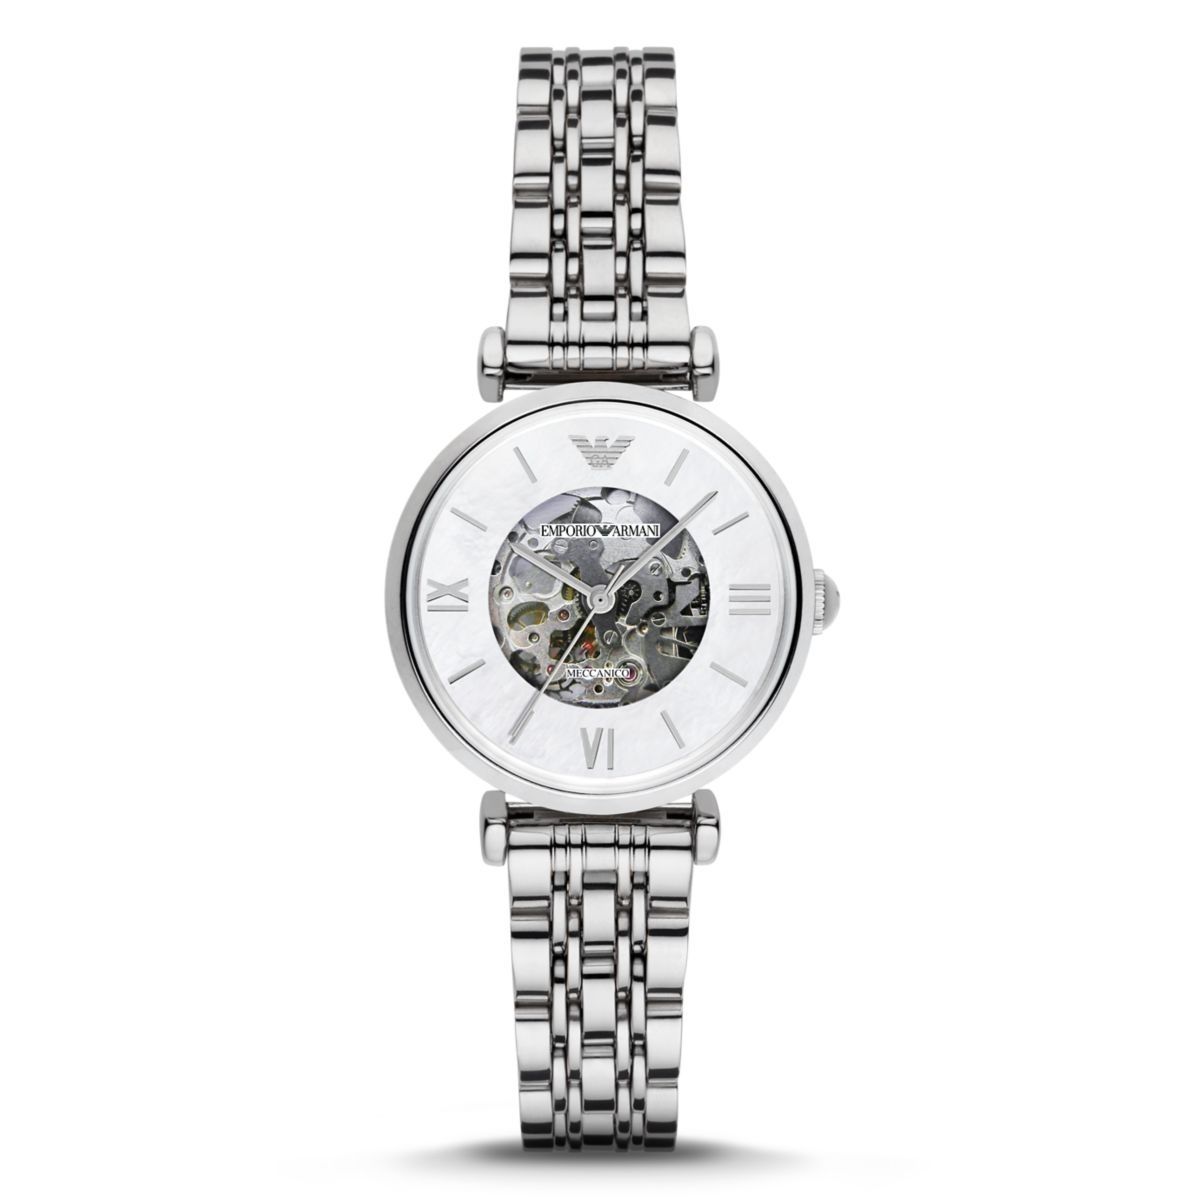 Наручные часы женские Emporio Armani AR1991 серебристые